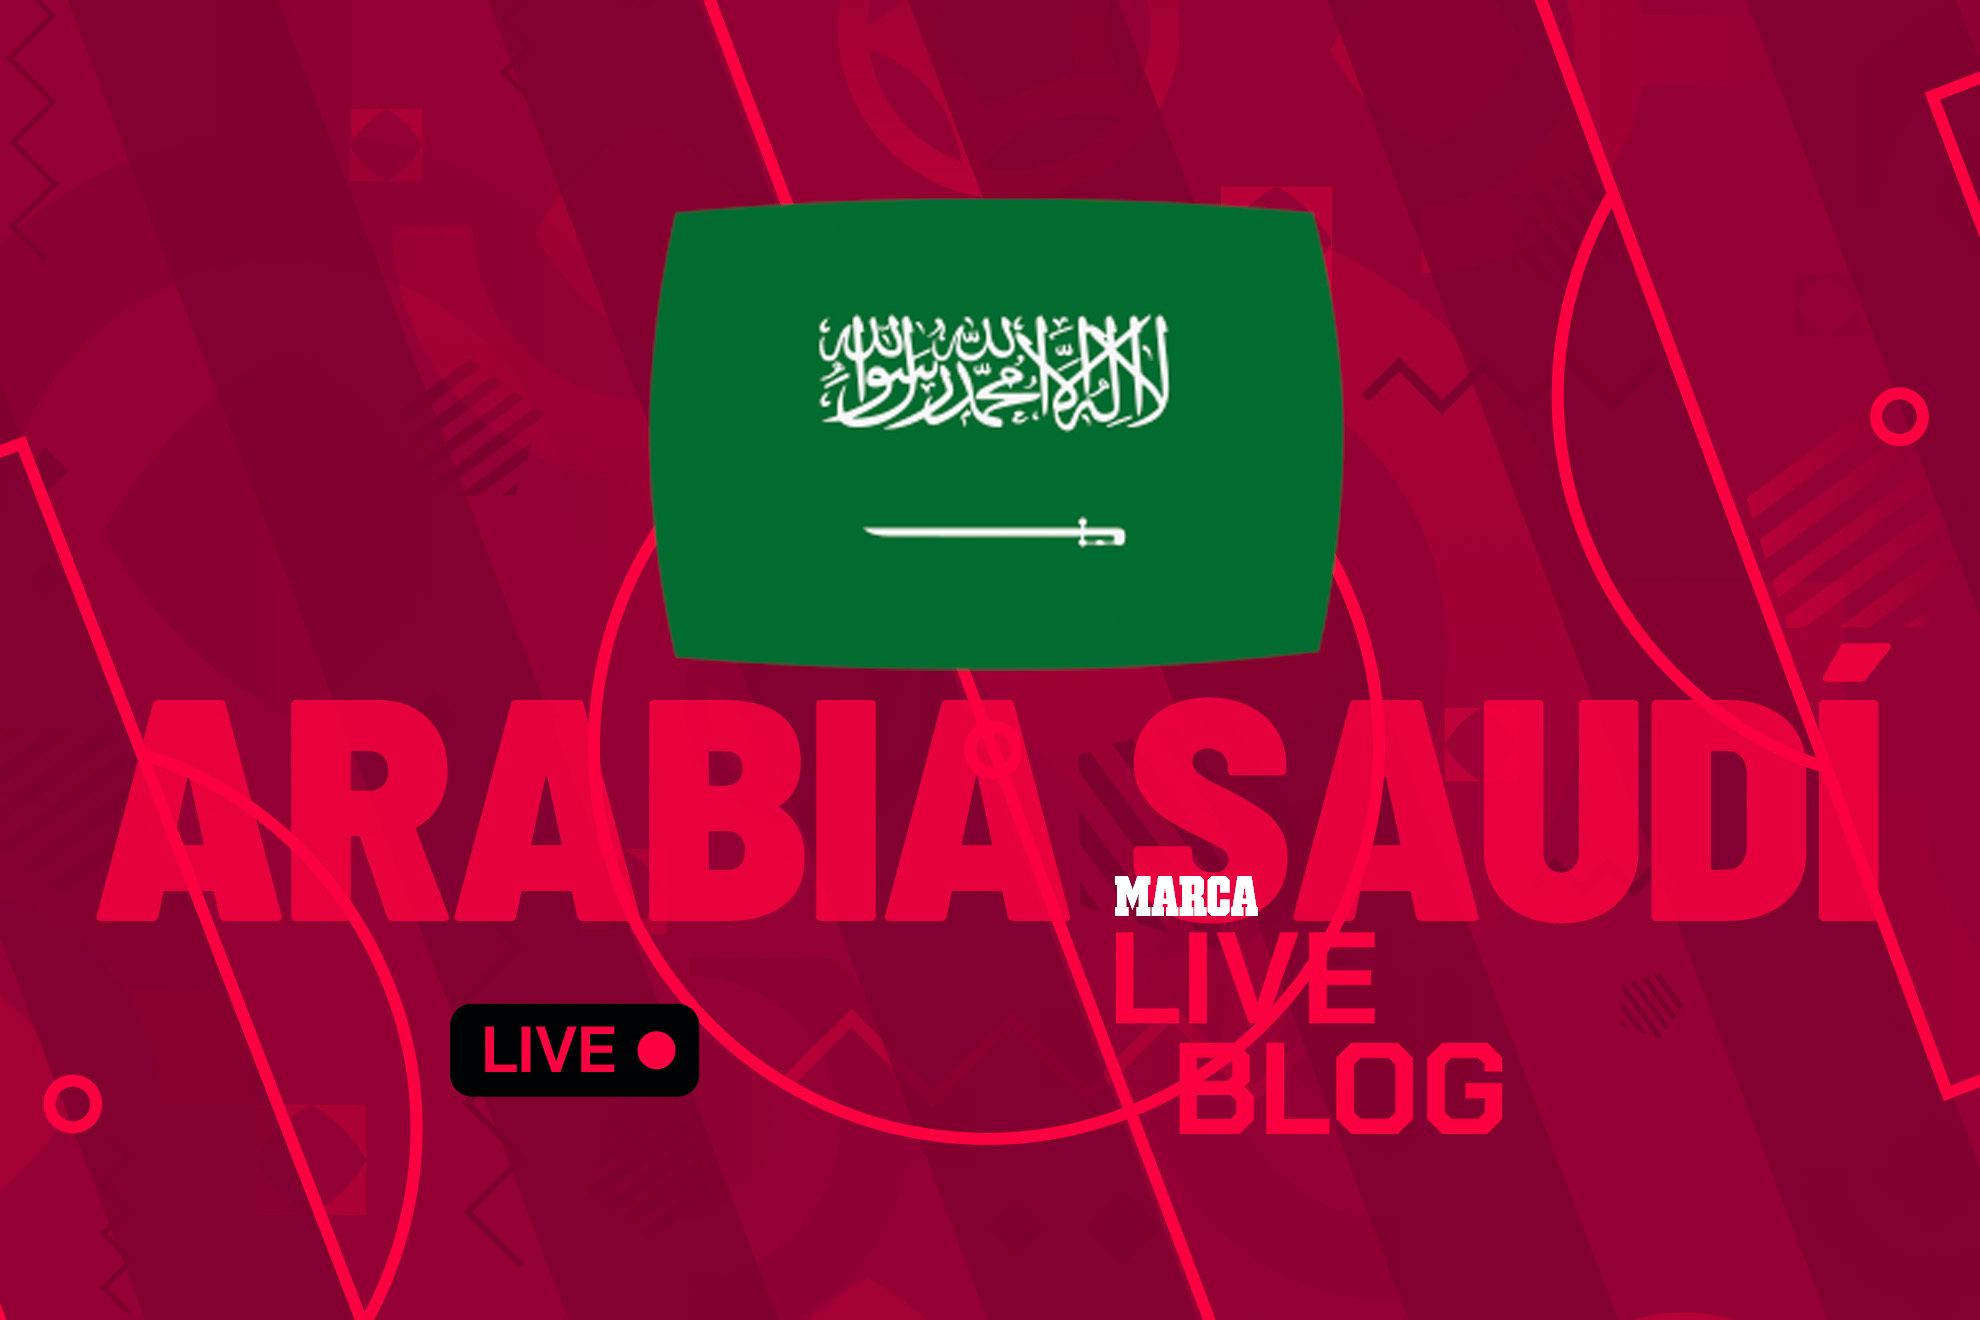 Arabia Saudí en el Mundial 2022 de Qatar, en directo | Última hora sobre la selección saudita en la Copa del Mundo